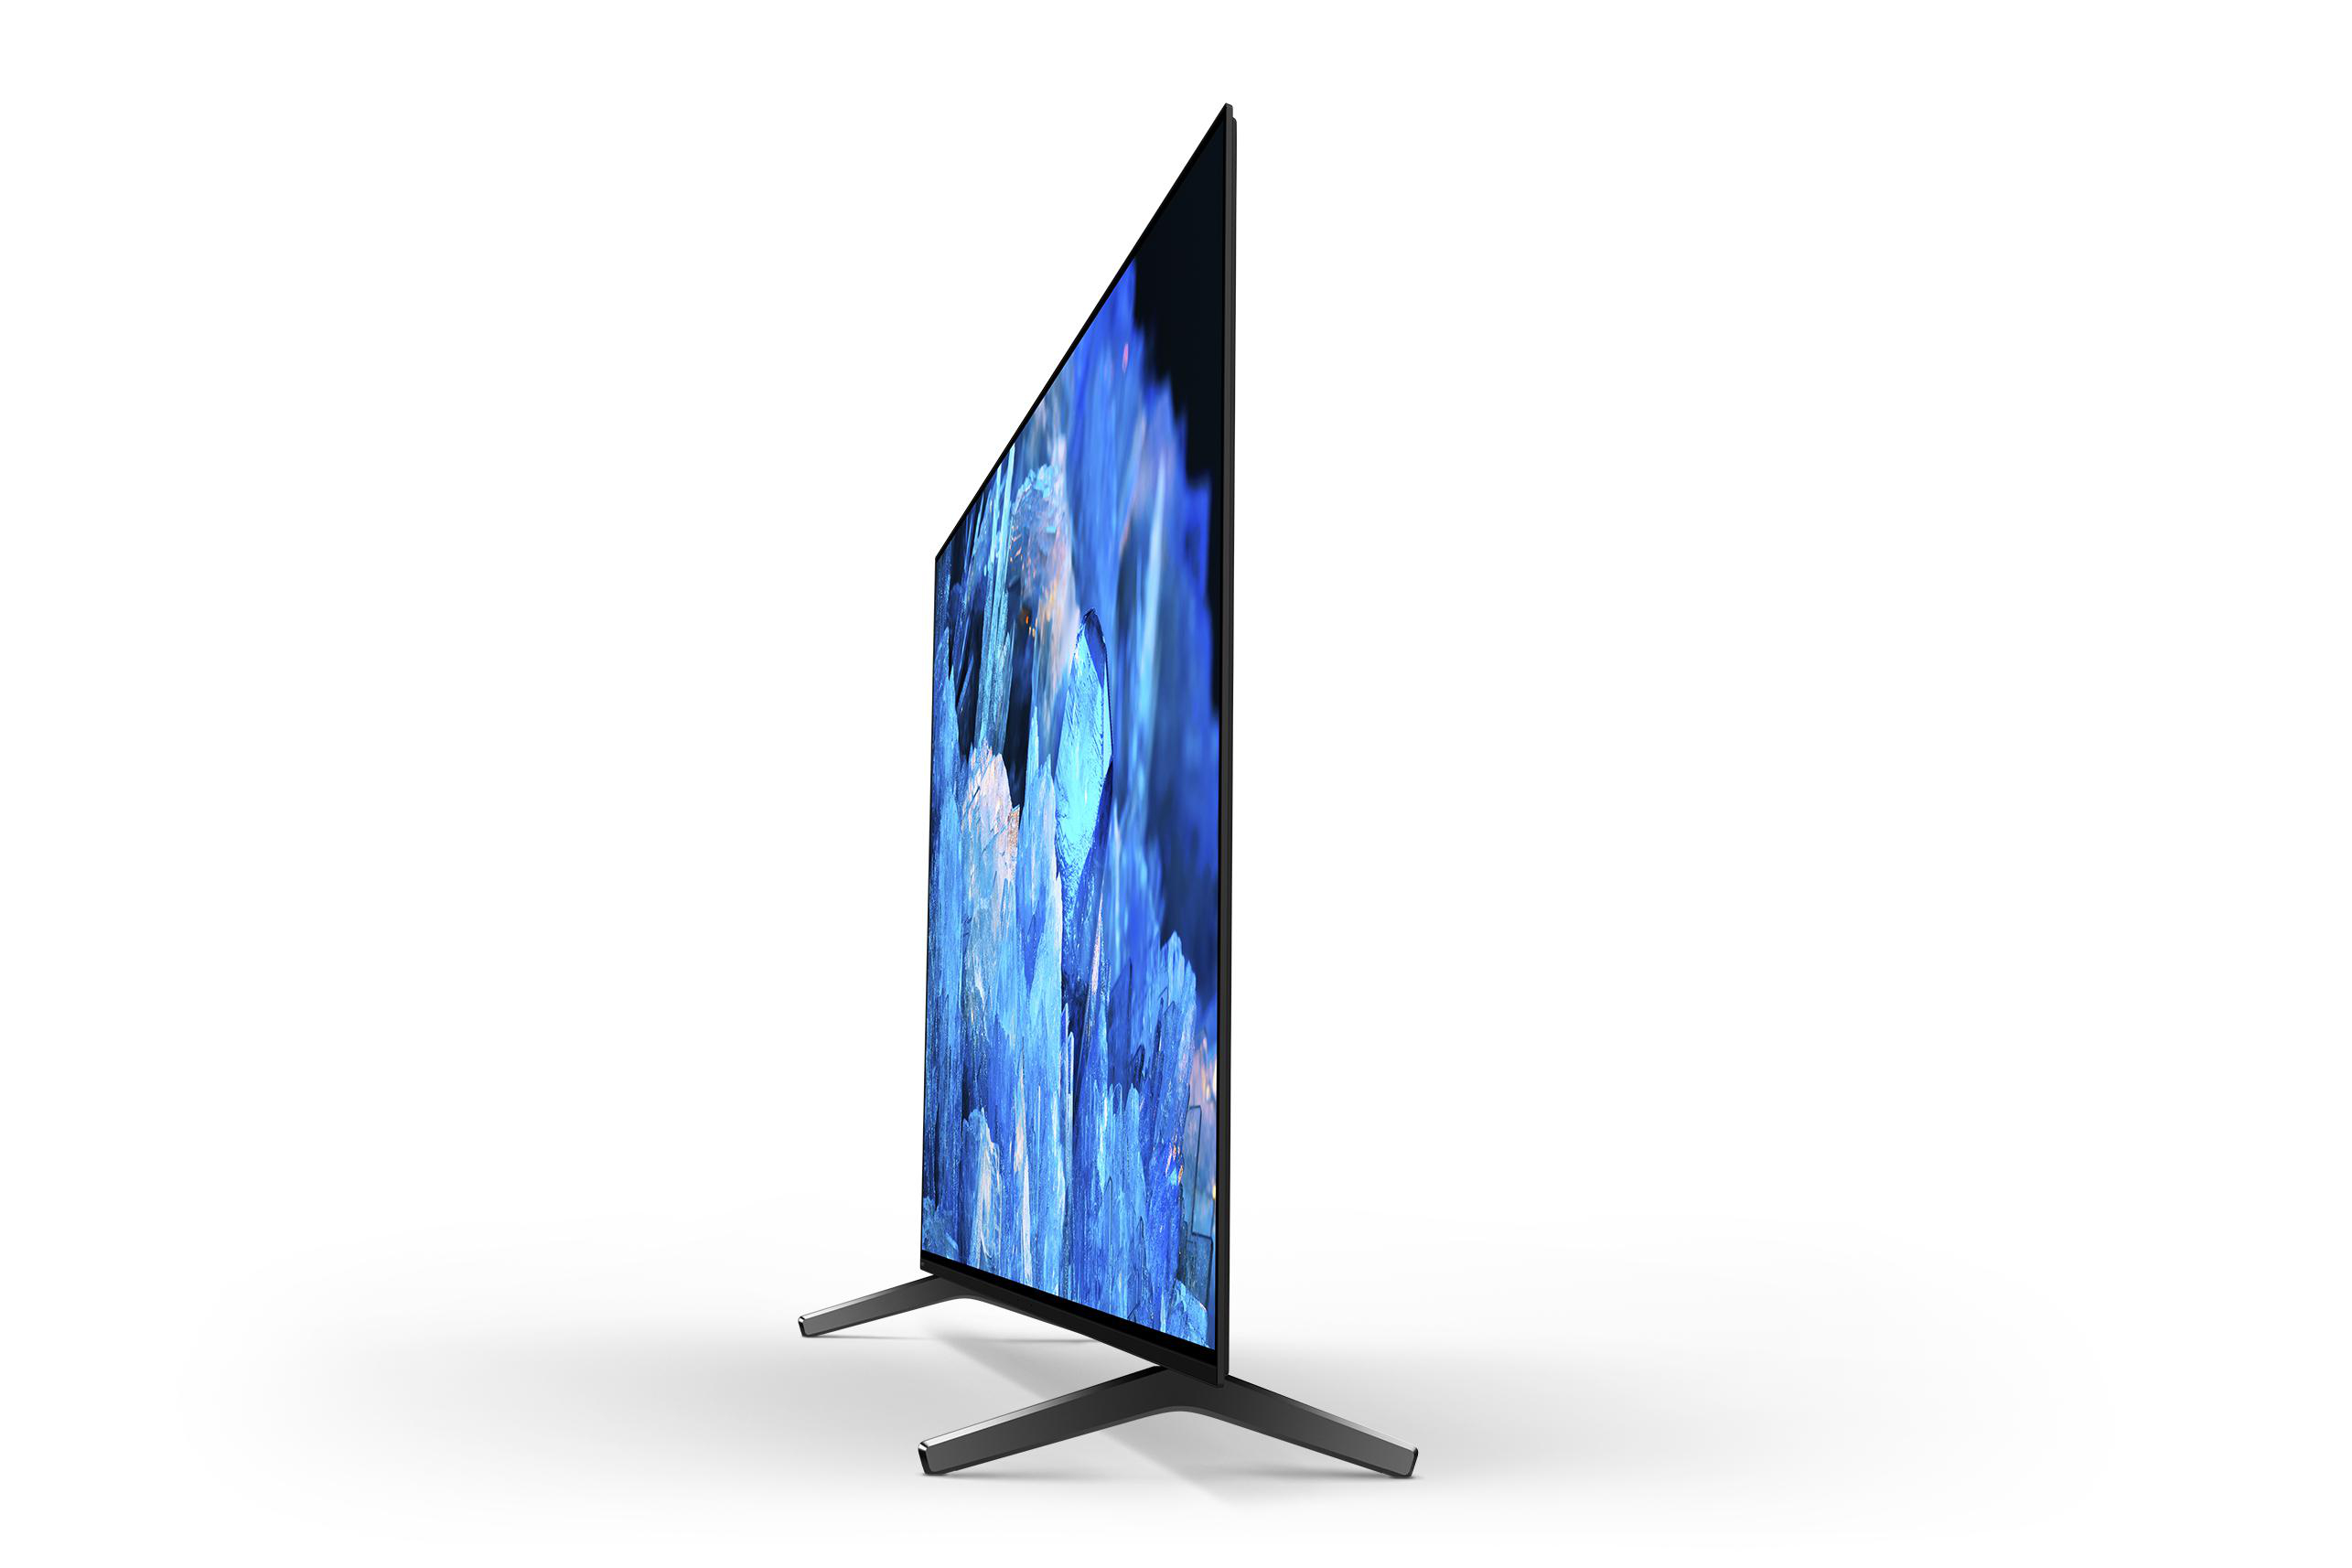 XR-65A75K TV) 65 BRAVIA / OLED 164 SMART OLED TV 4K, SONY (Flat, Zoll Google TV, cm,